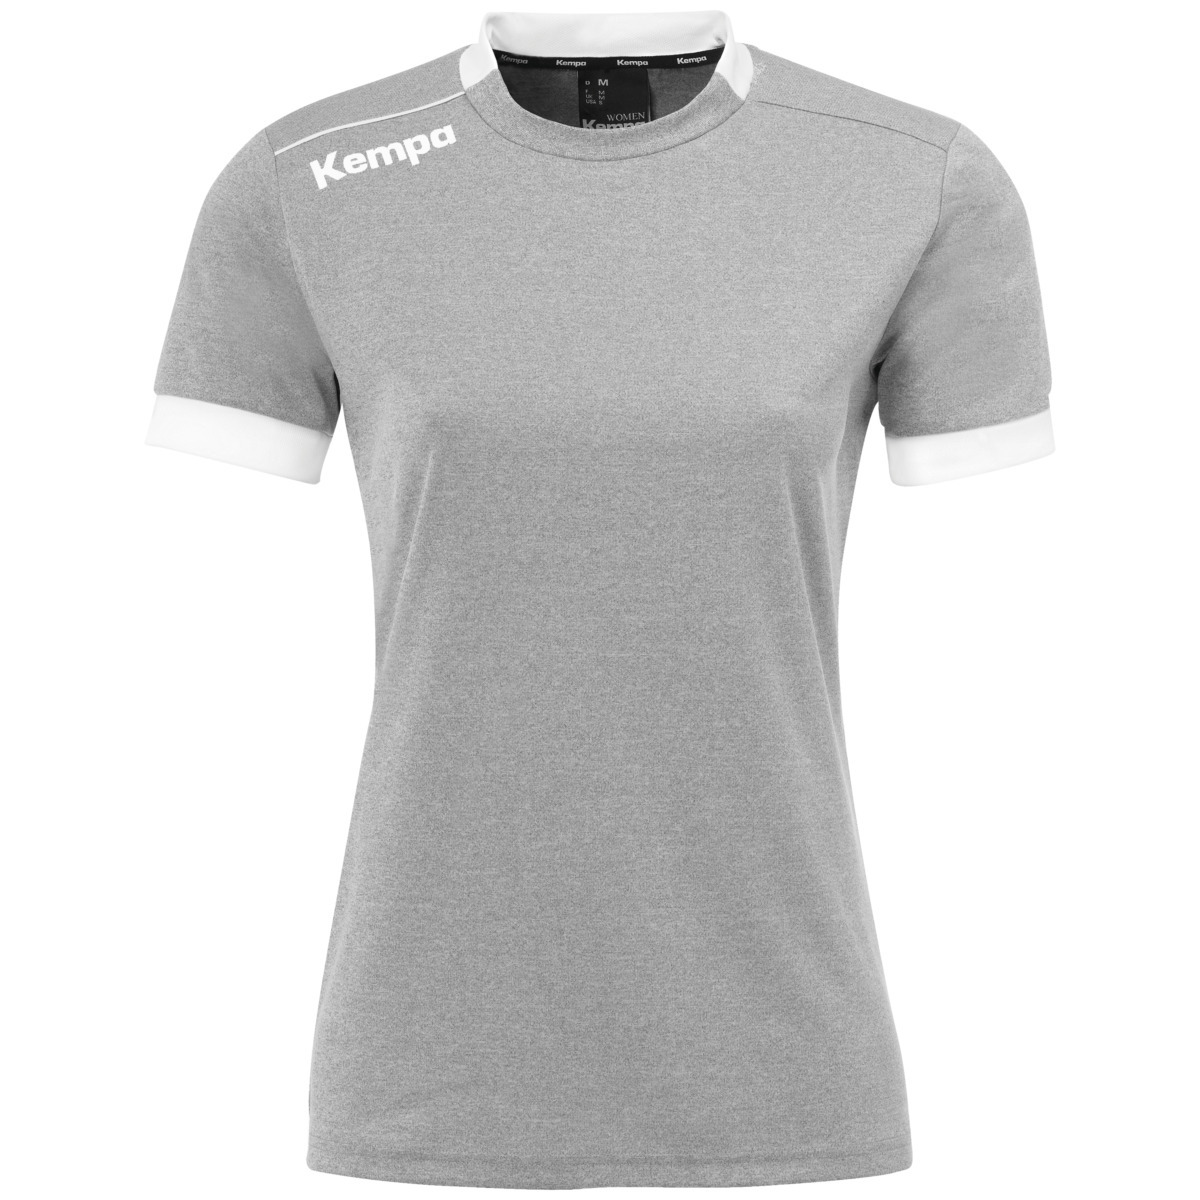 Camiseta Maillot Kempa Player - gris-claro - 